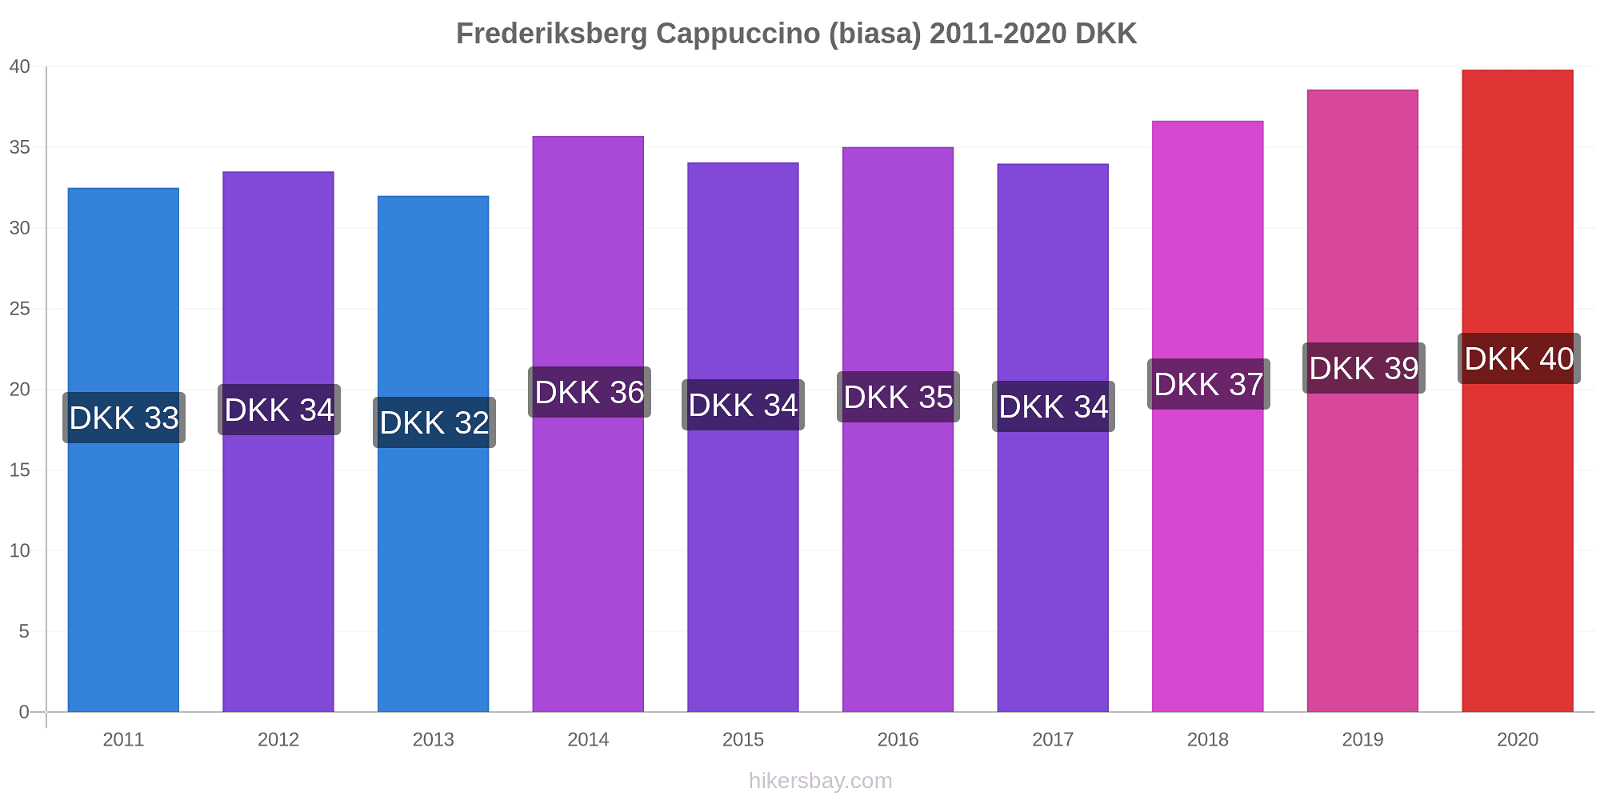 Frederiksberg perubahan harga Cappuccino (biasa) hikersbay.com